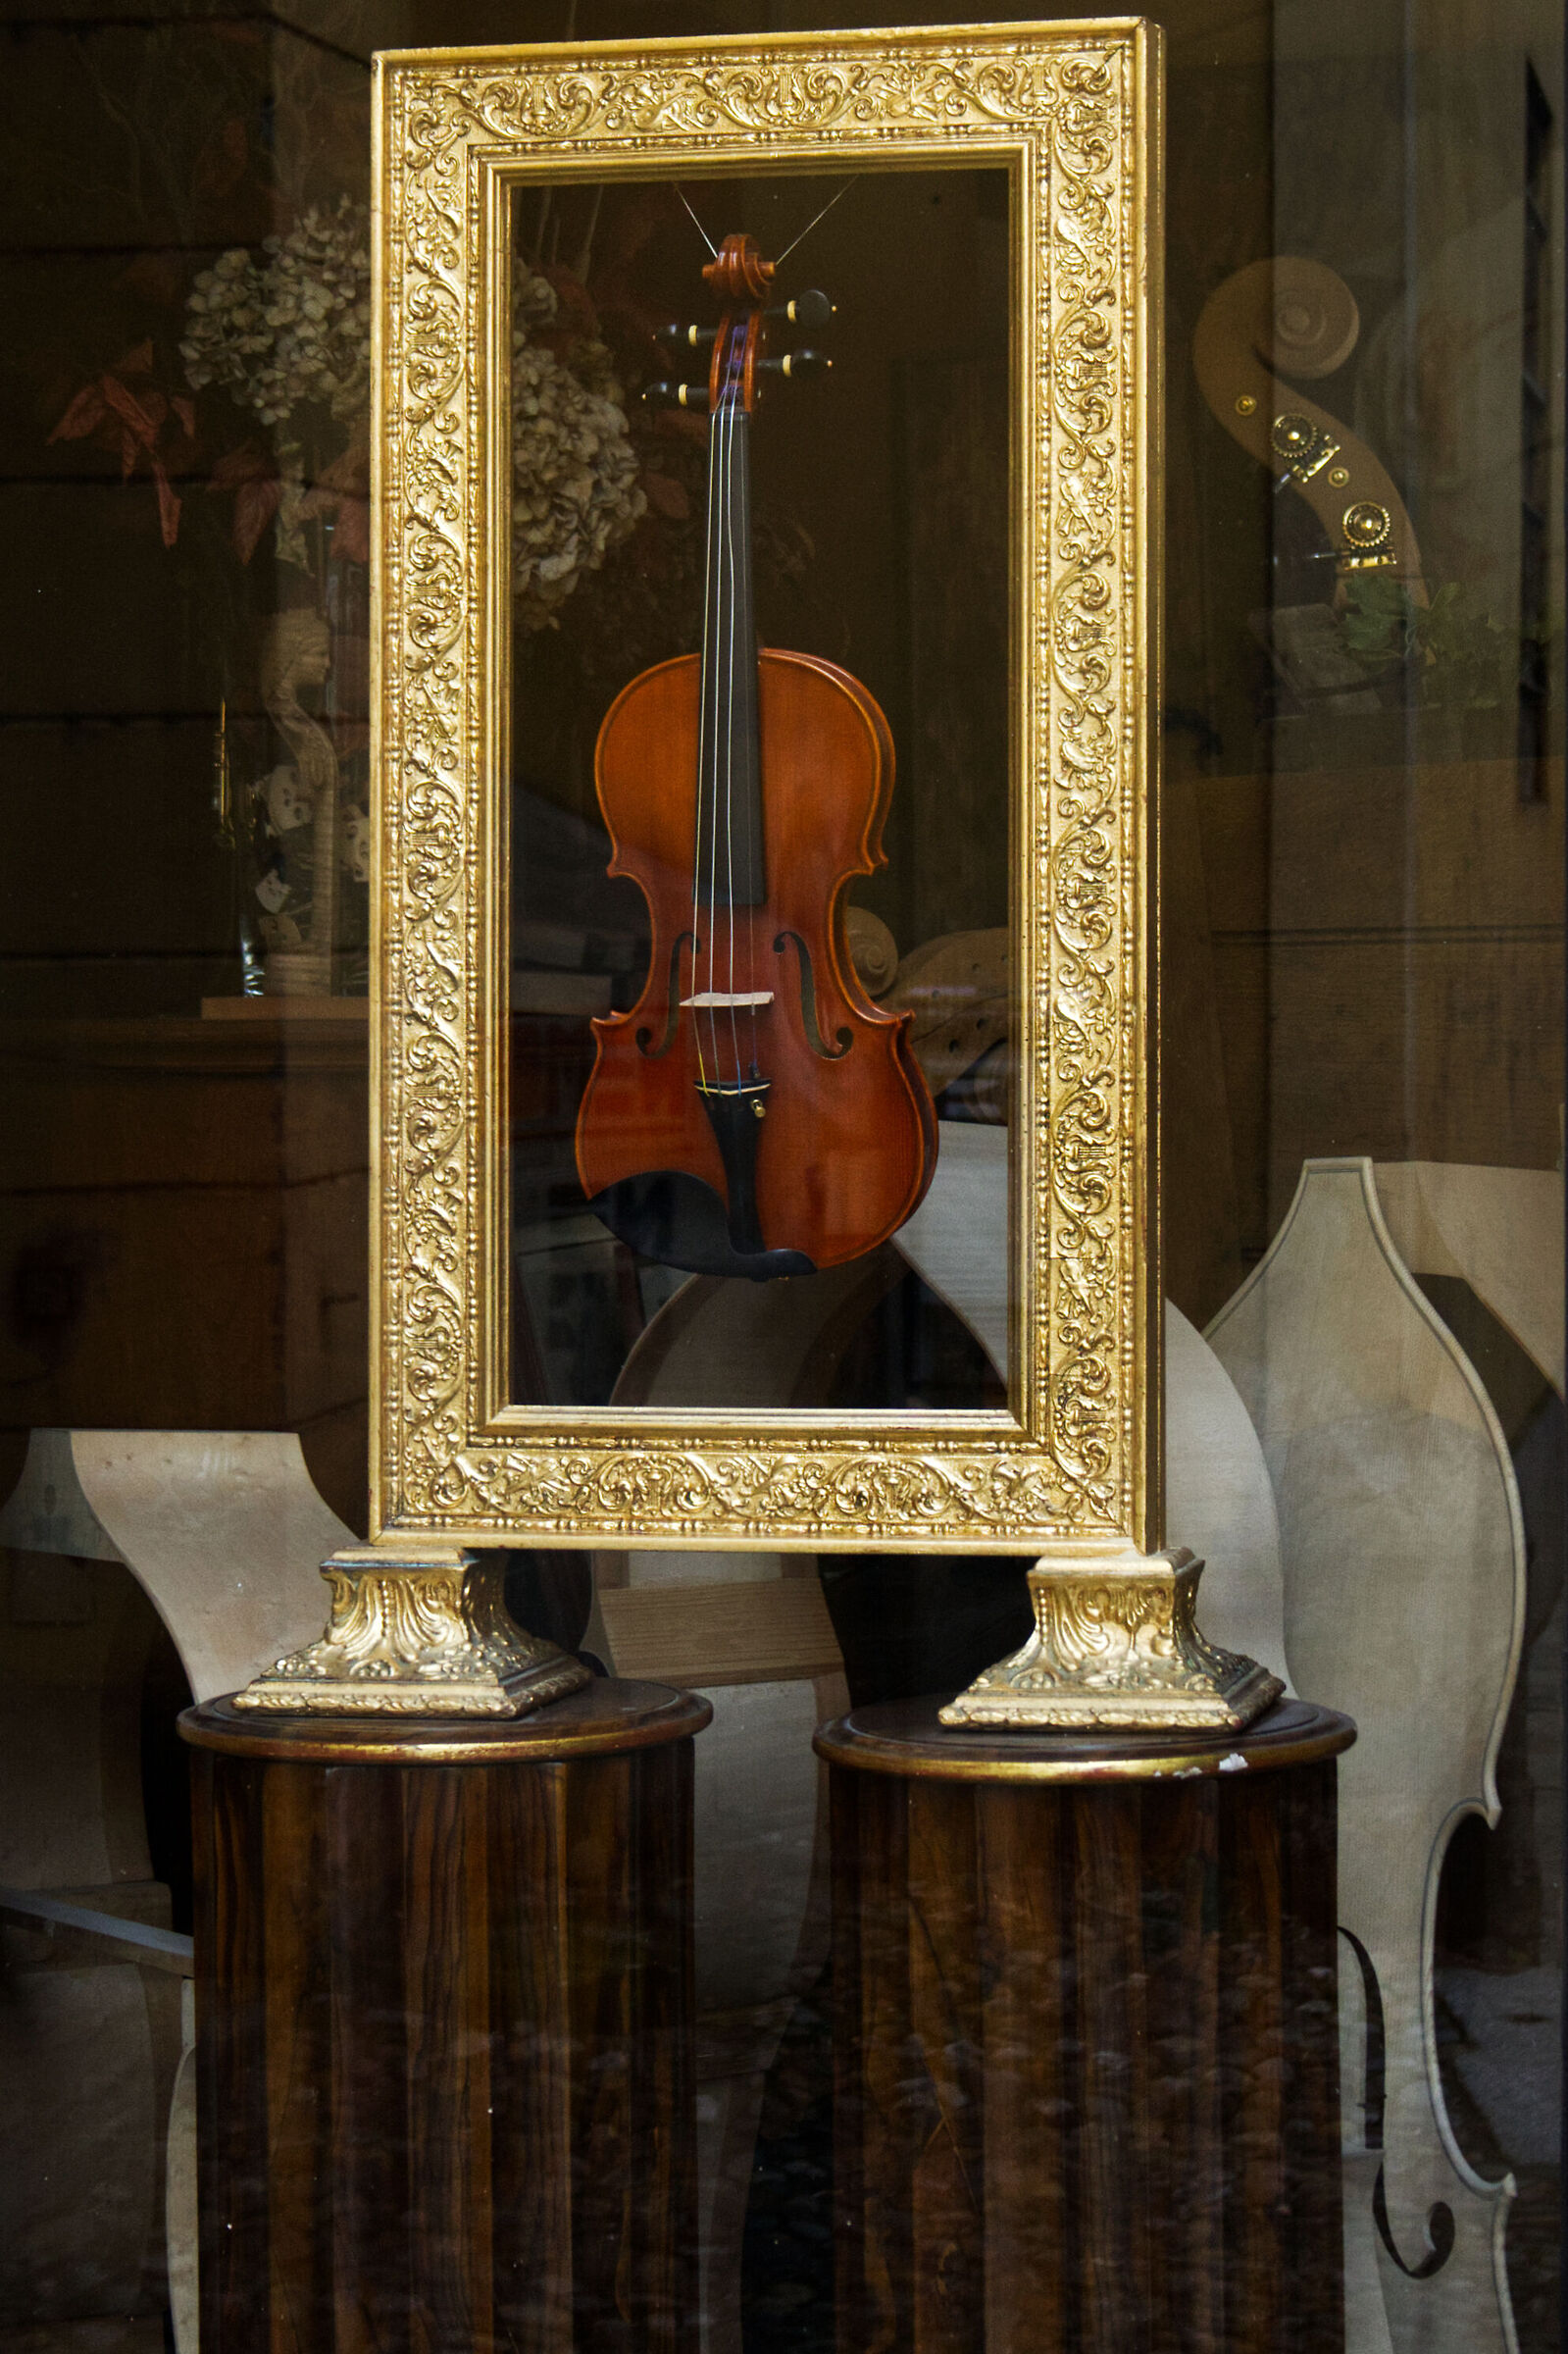 The Violin...